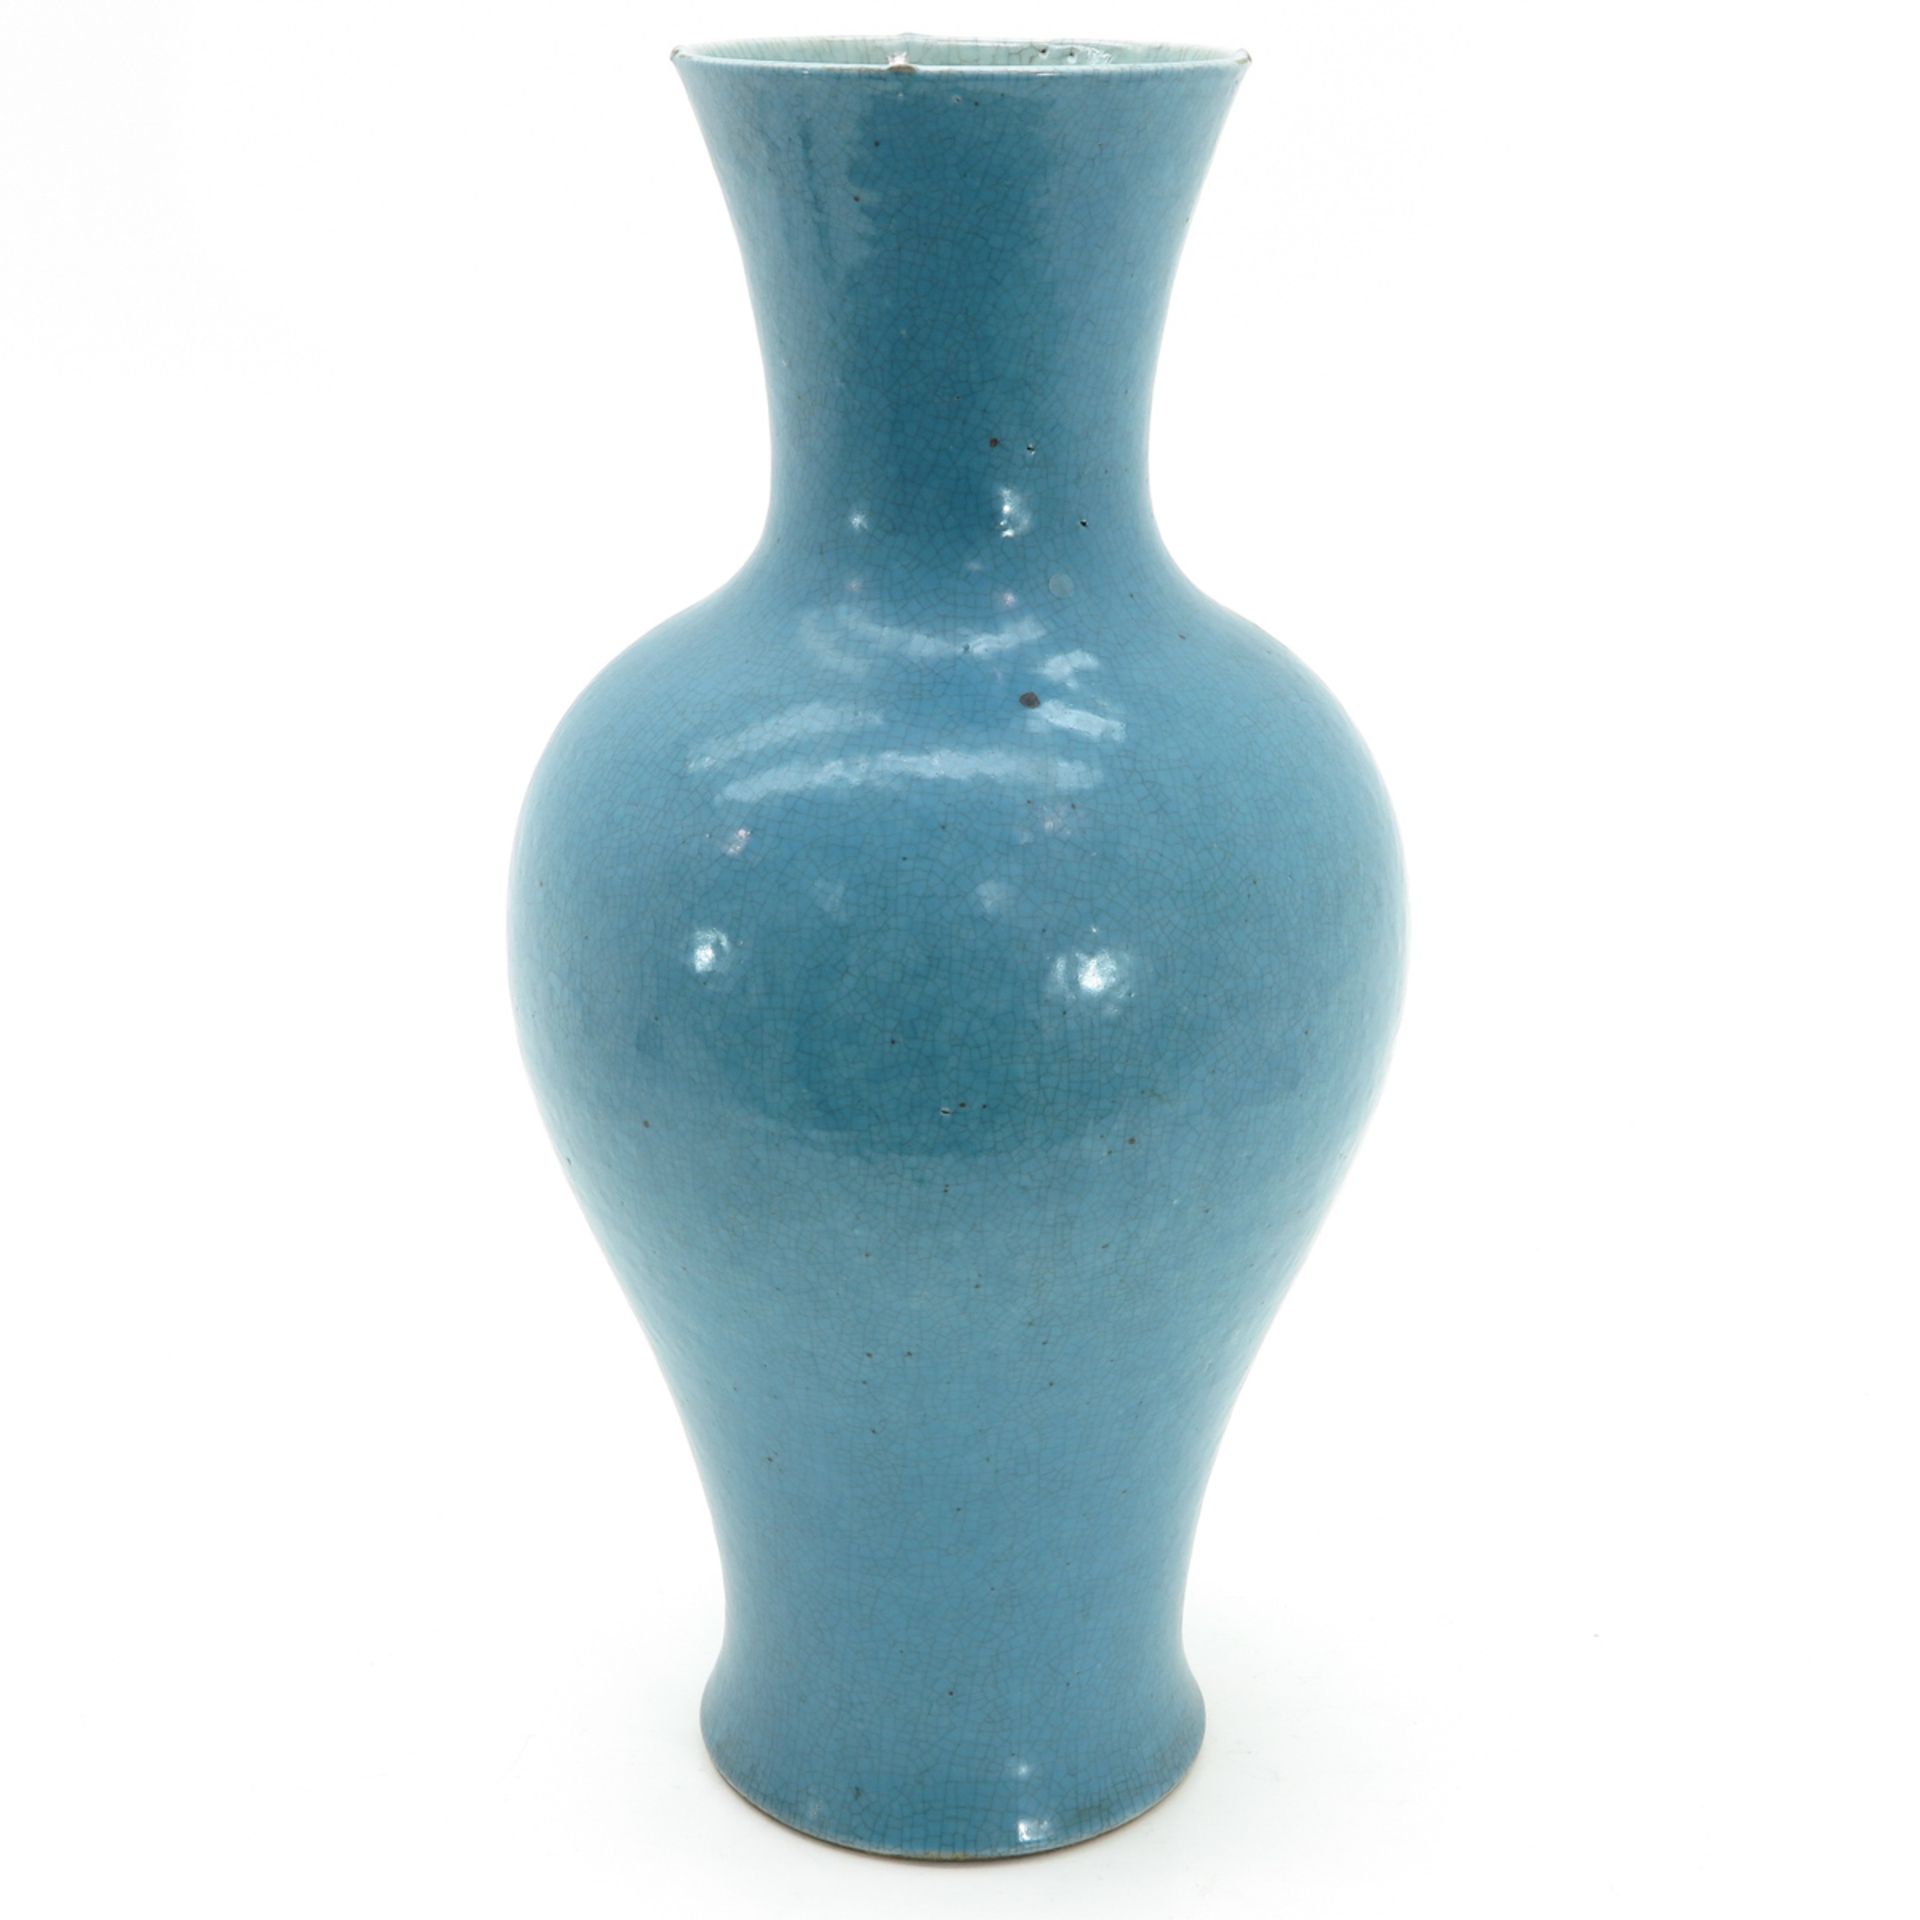 A Light Blue Crackleware Decor Vase